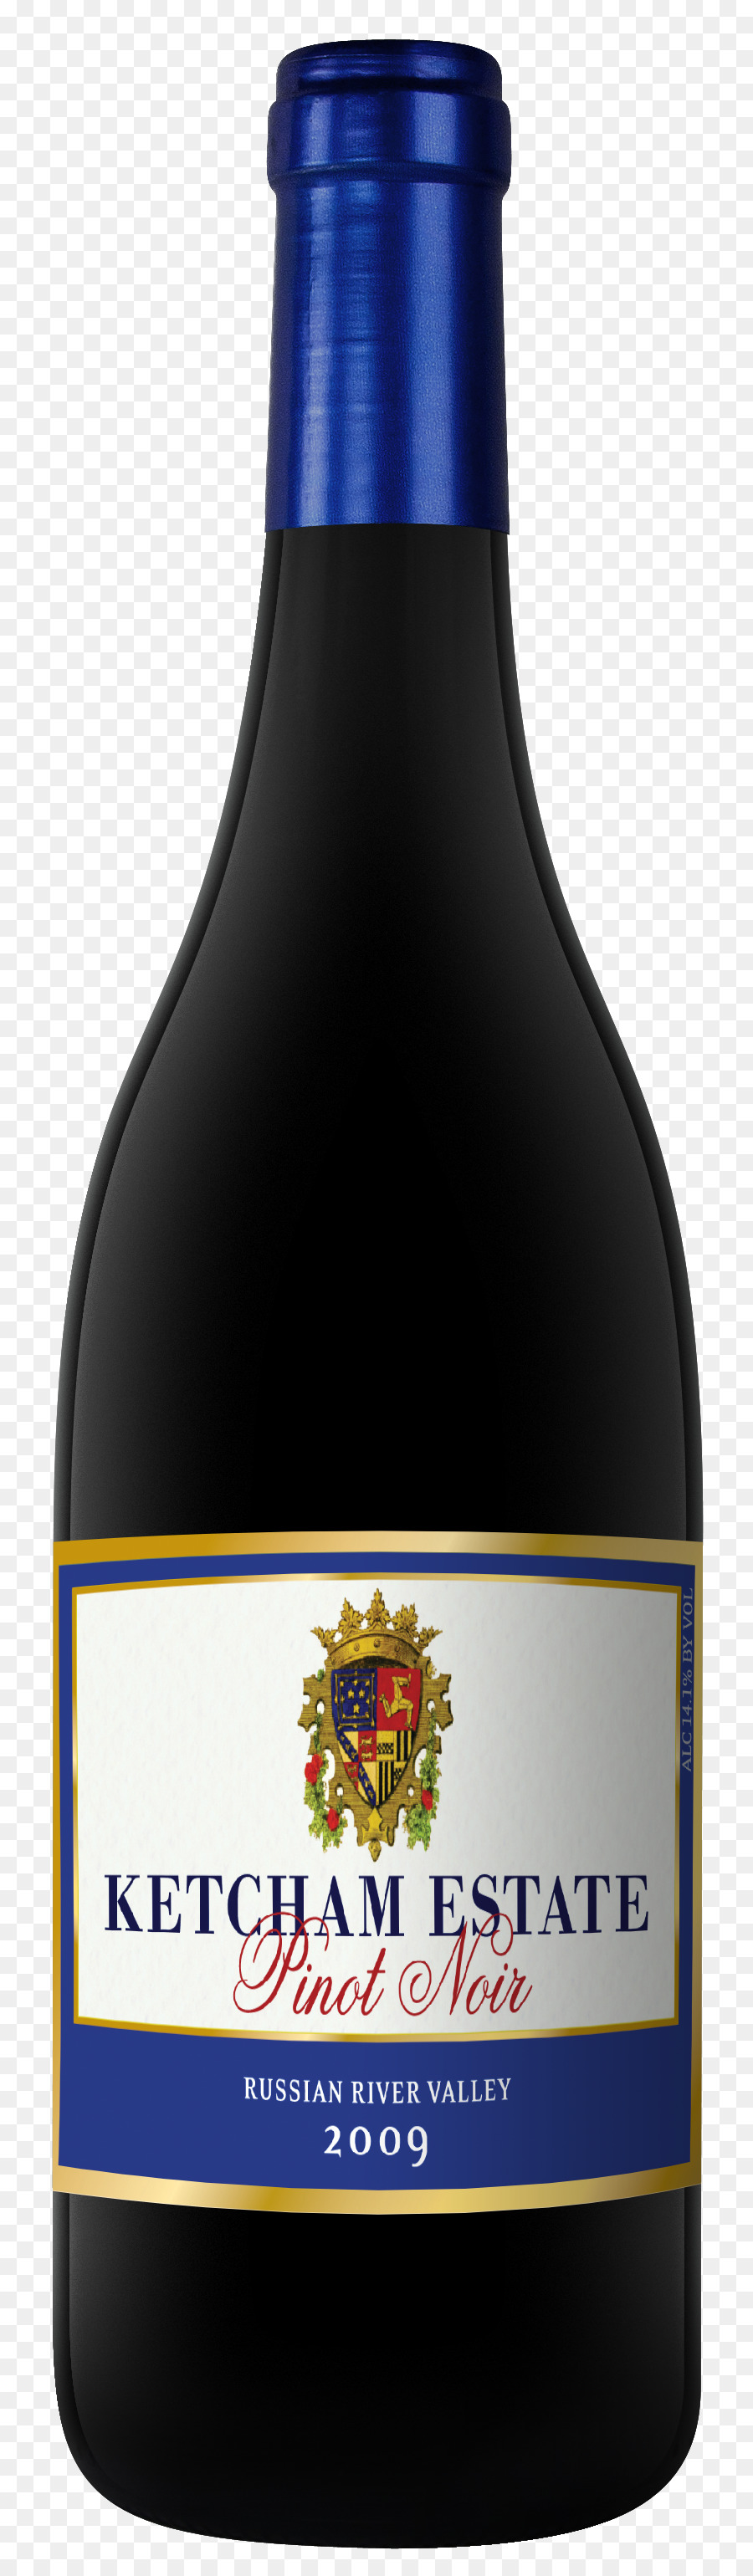 Vino liquoroso Prodotto Bottiglia di Grand final - vino rosso pinot nero russo